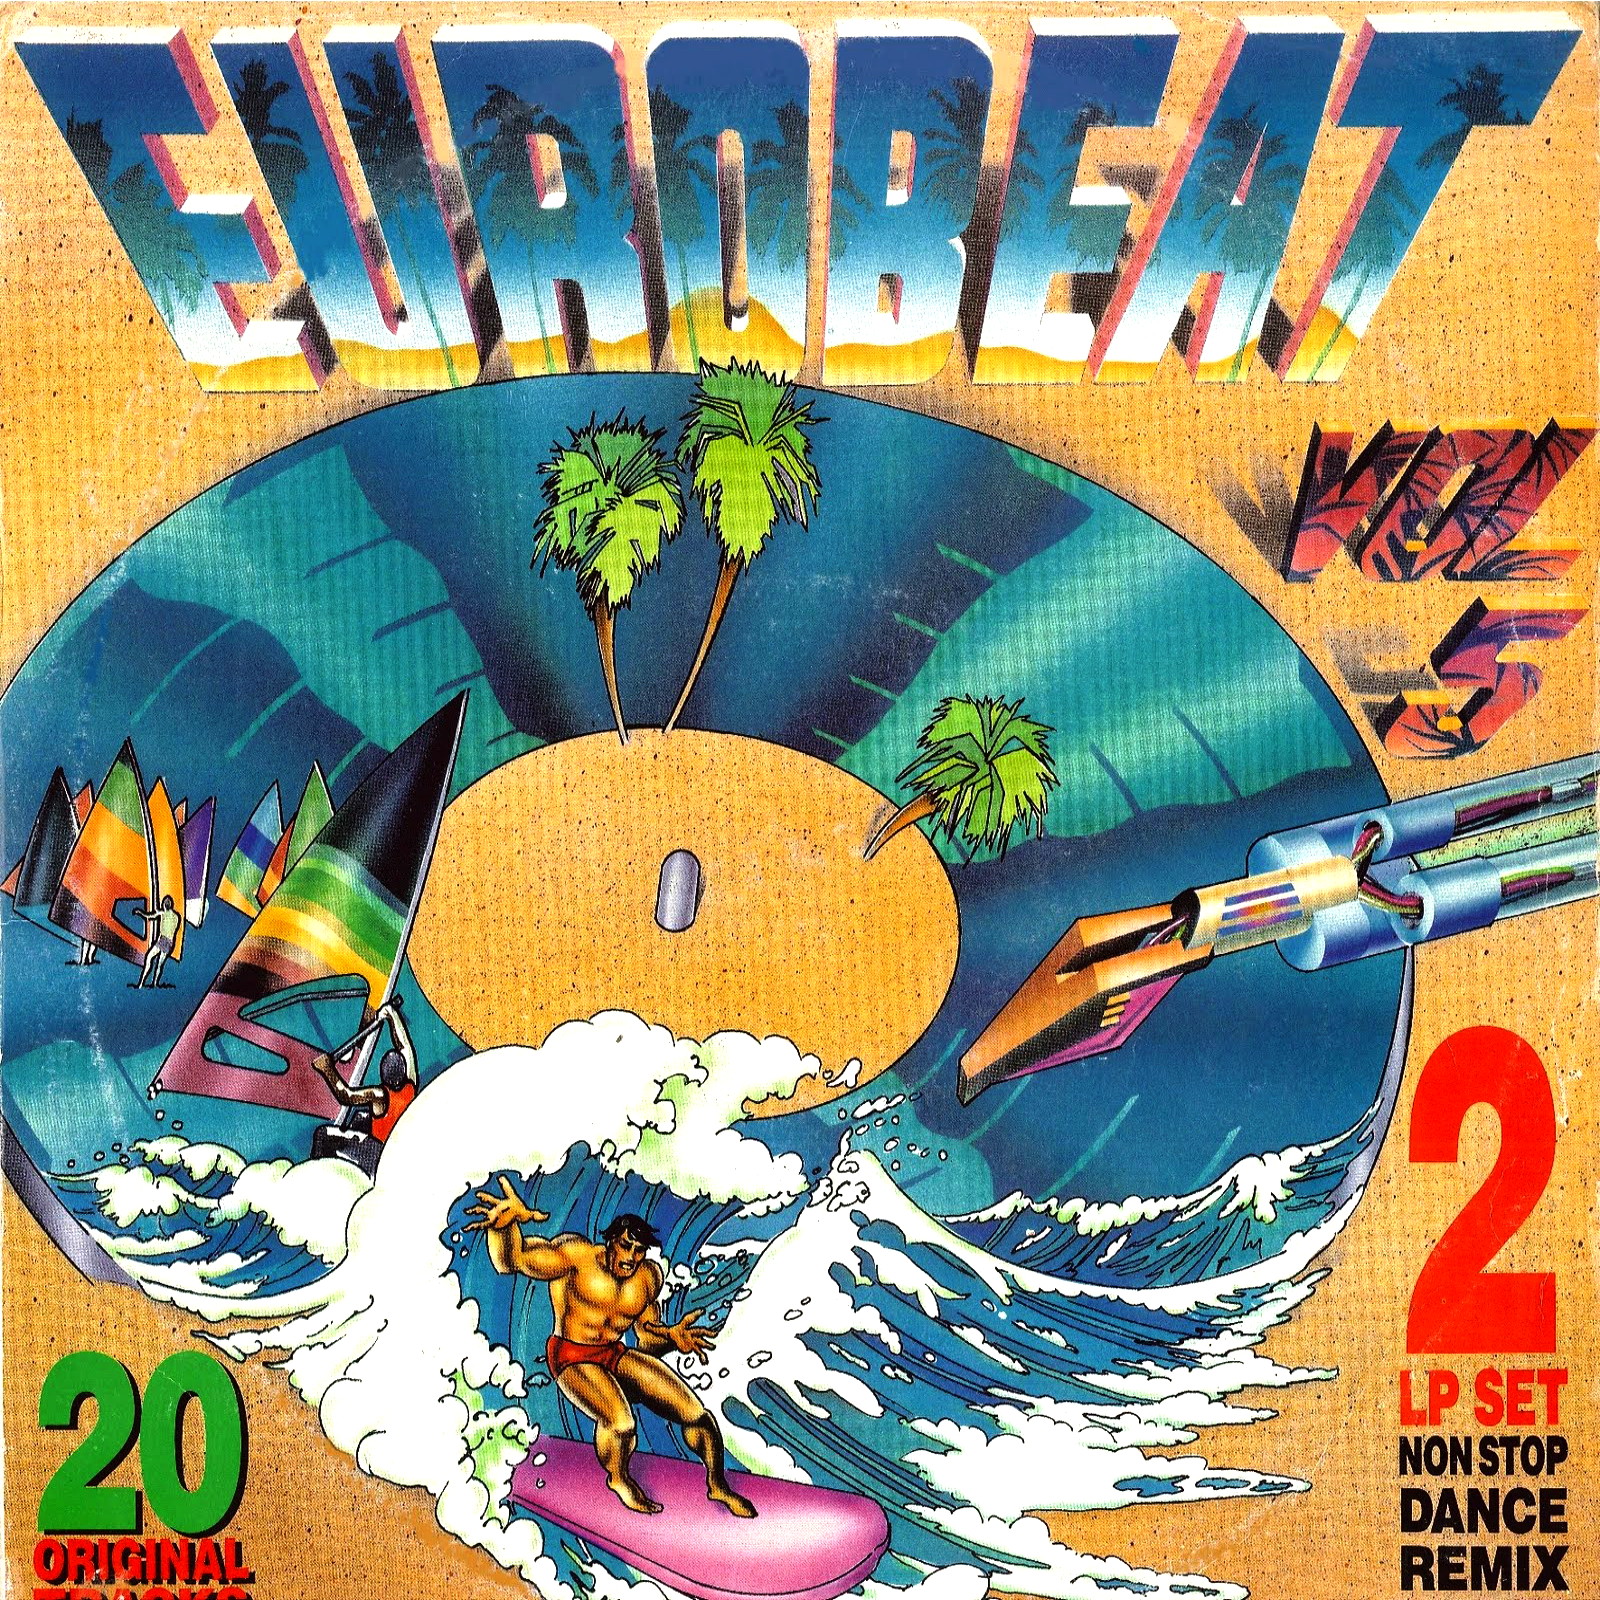 Retro Disco Hi Nrg Eurobeat Volume 5 90 Minute Non